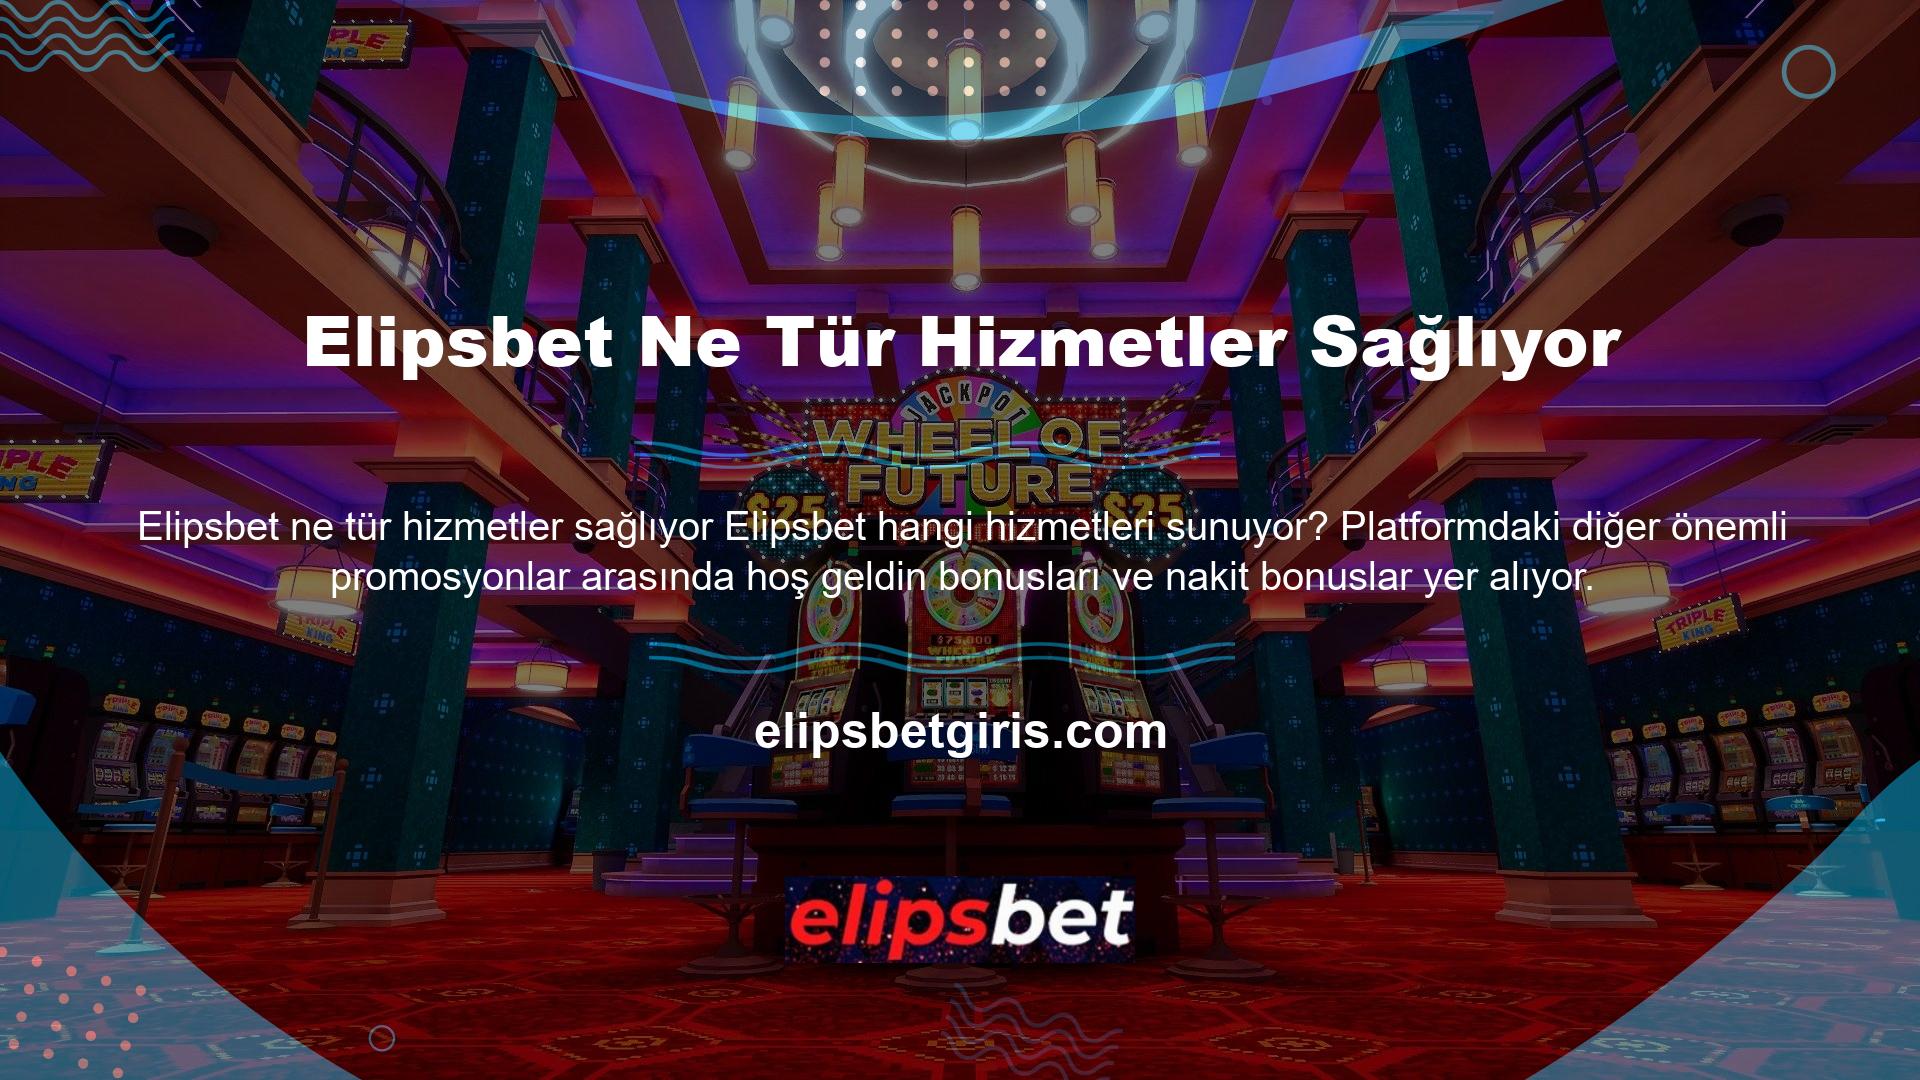 Elipsbet en popüler casino ve spor bahis platformlarından biridir ve aynı zamanda birçok harika içeriğe sahiptir